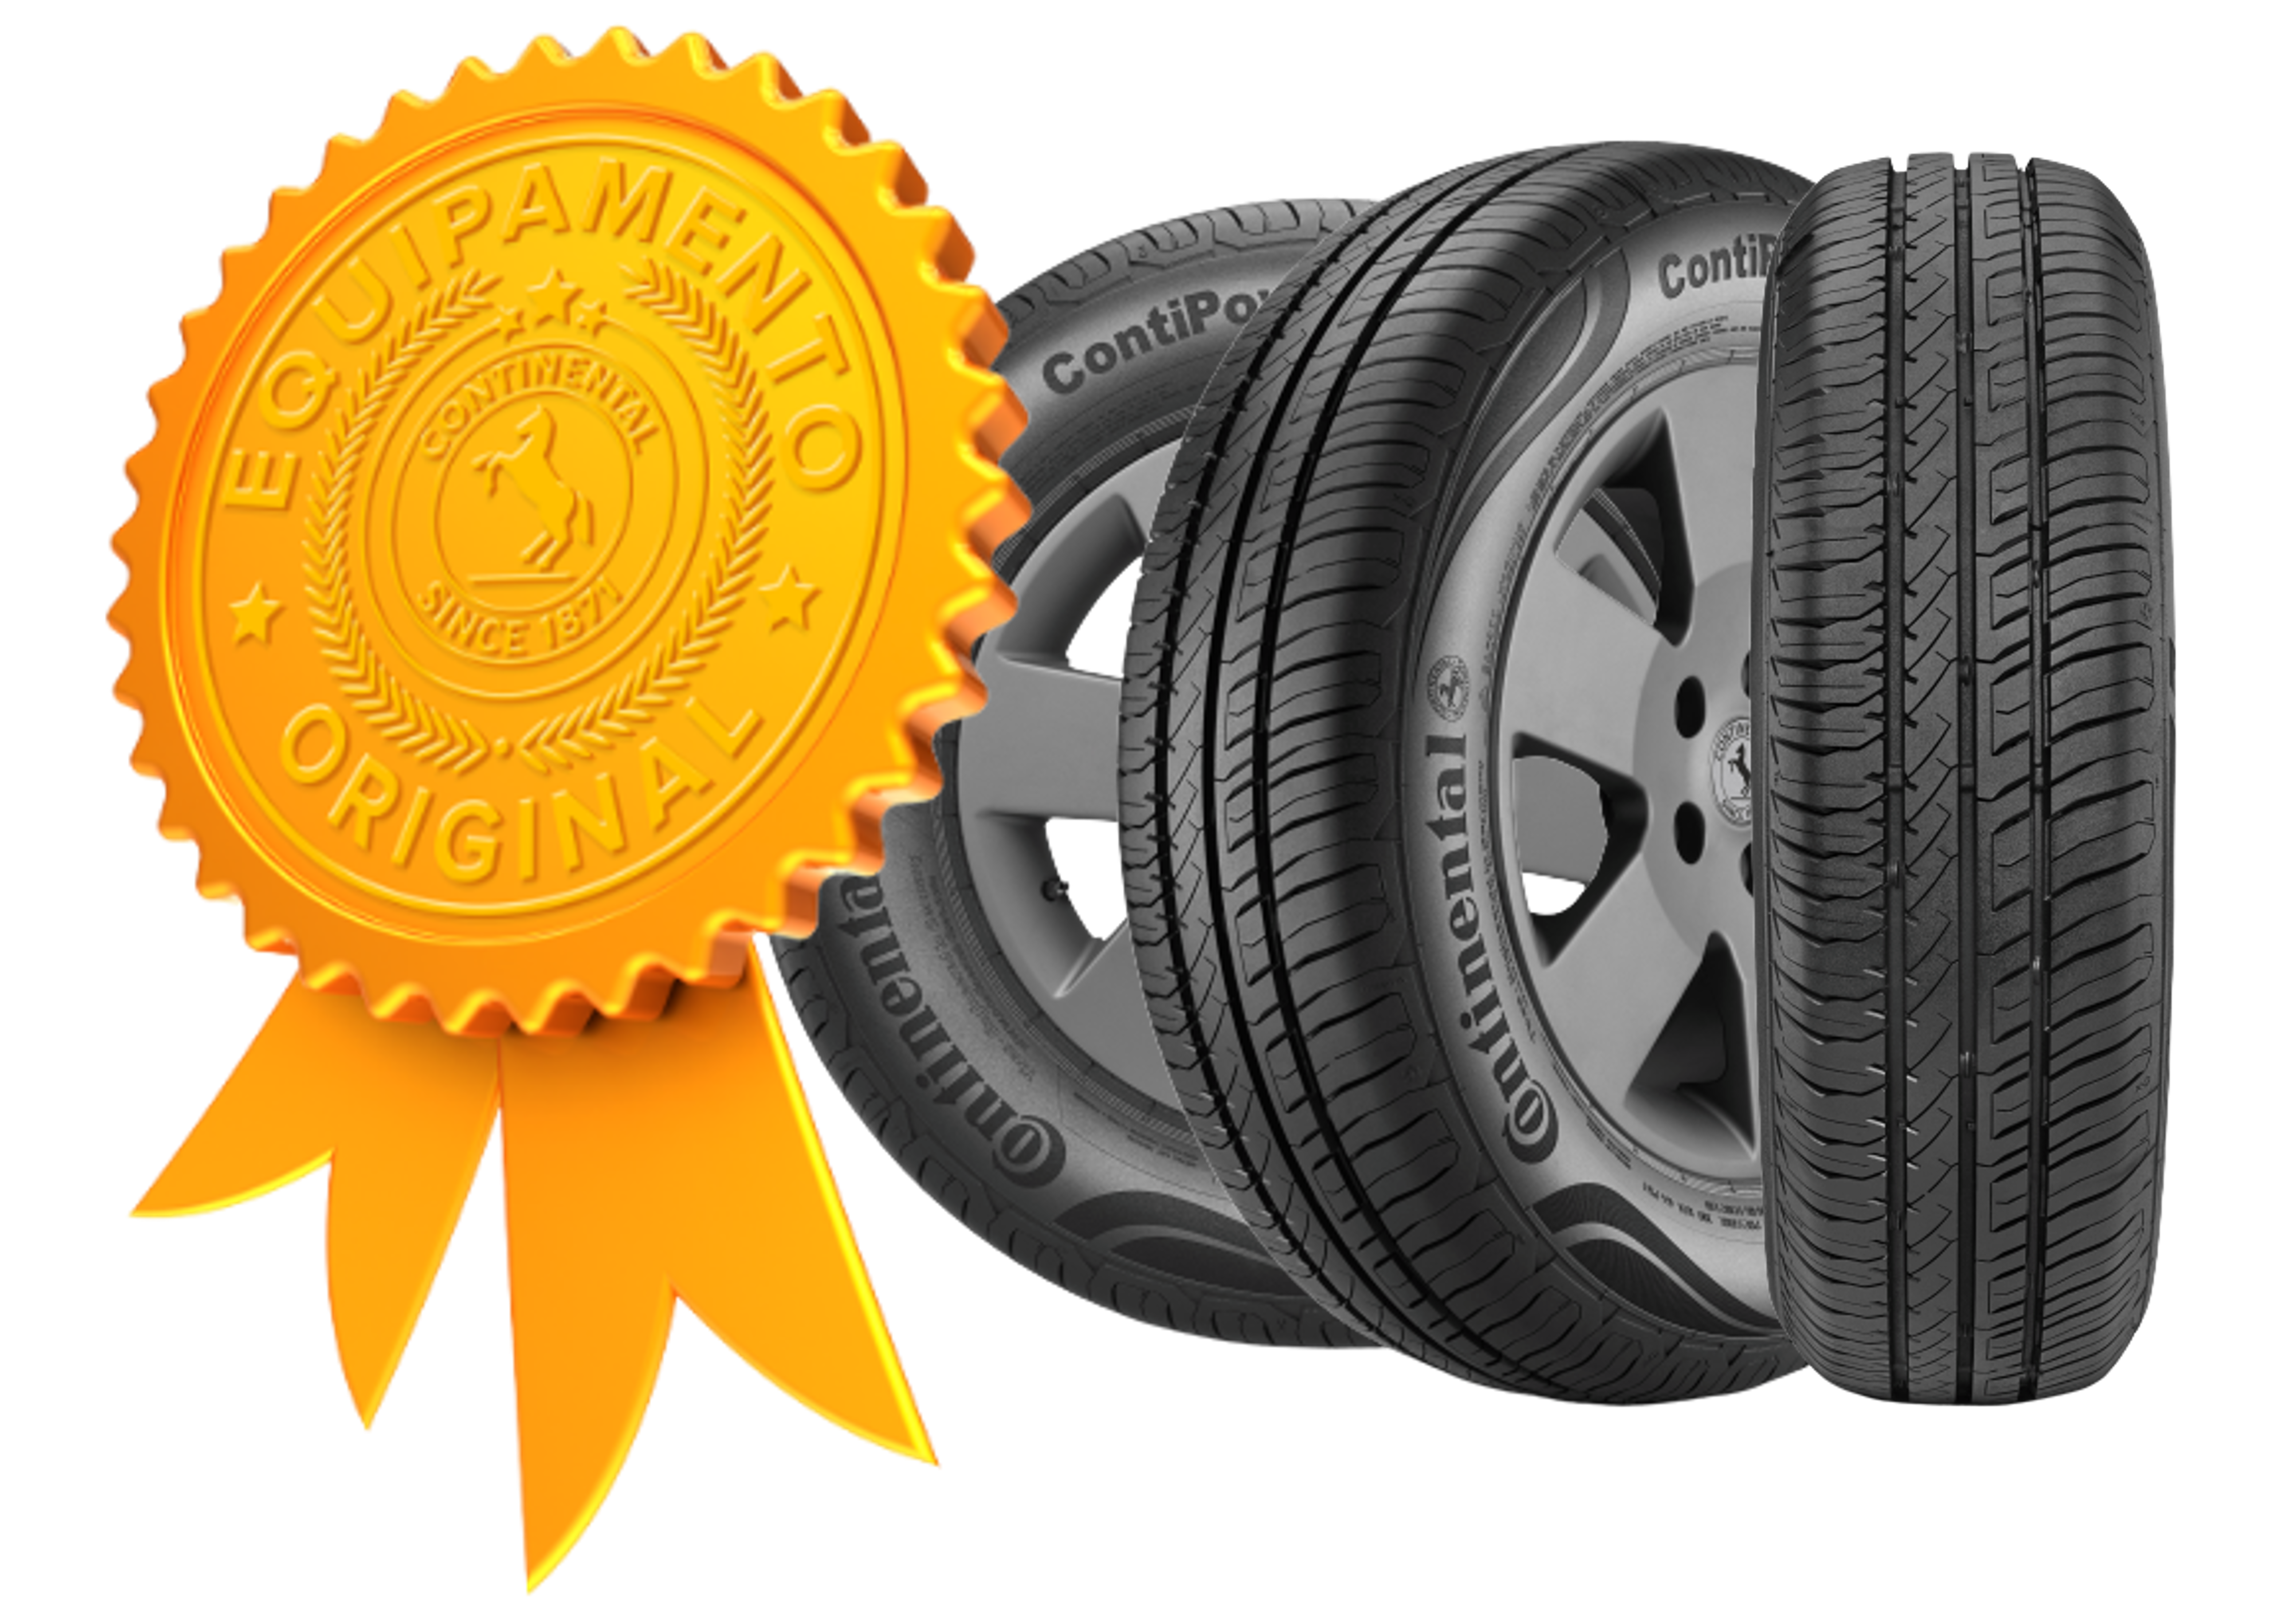 (arte com selo de qualidade de pneu original do Prisma a e três fotos do pneu original do Prisma em ângulos diferentes)